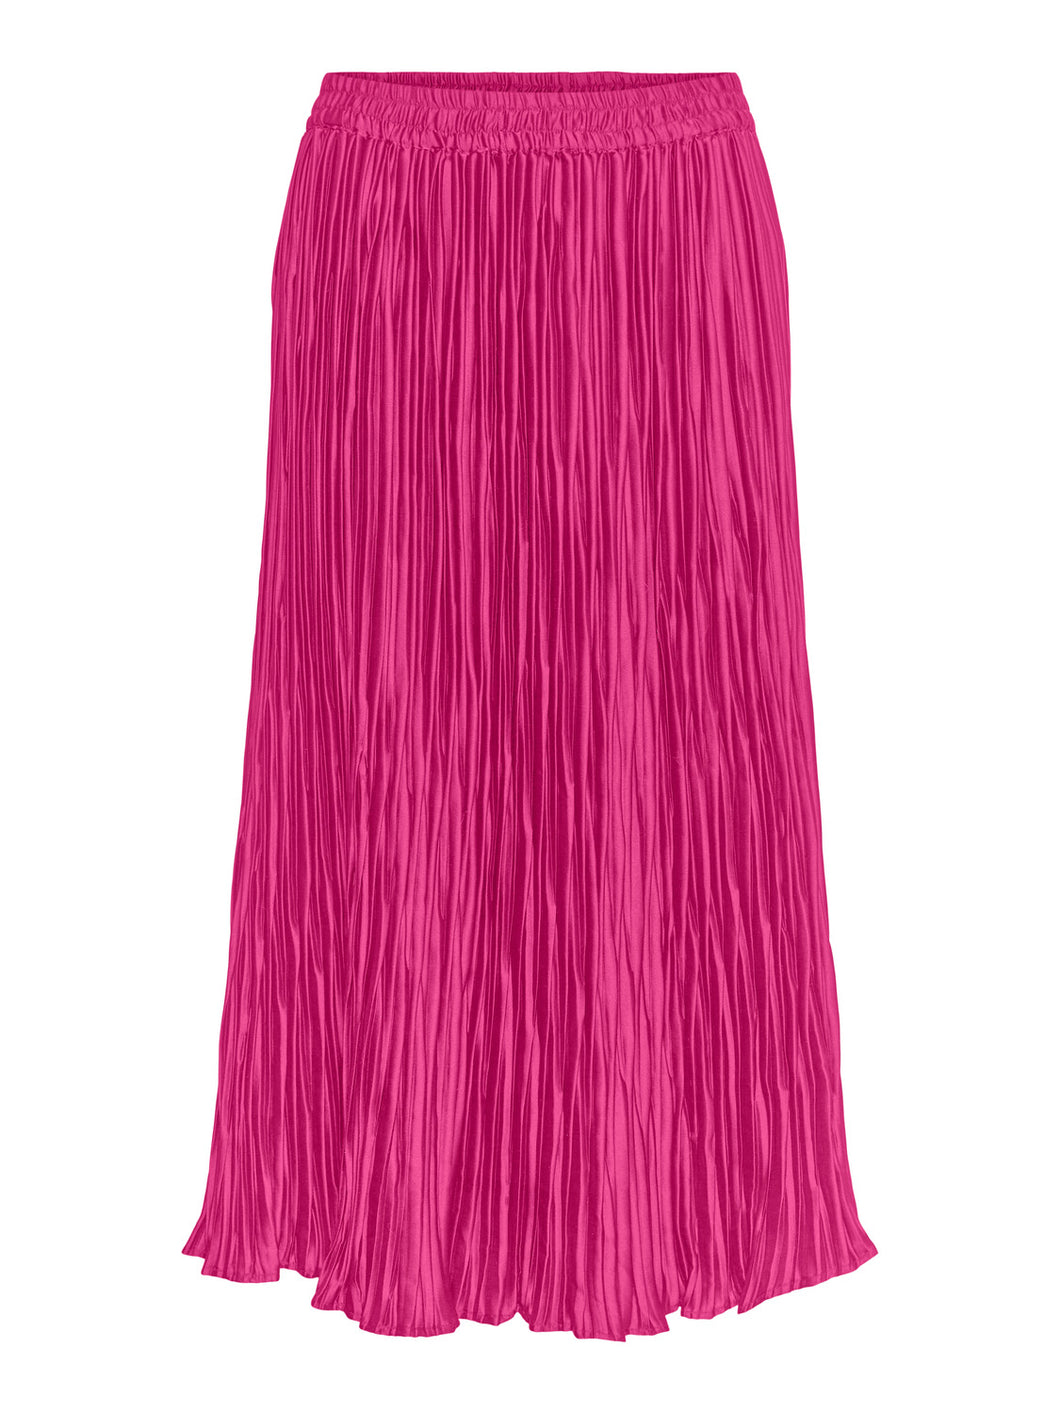 VMMEGGA Skirt - Fuchsia Purple